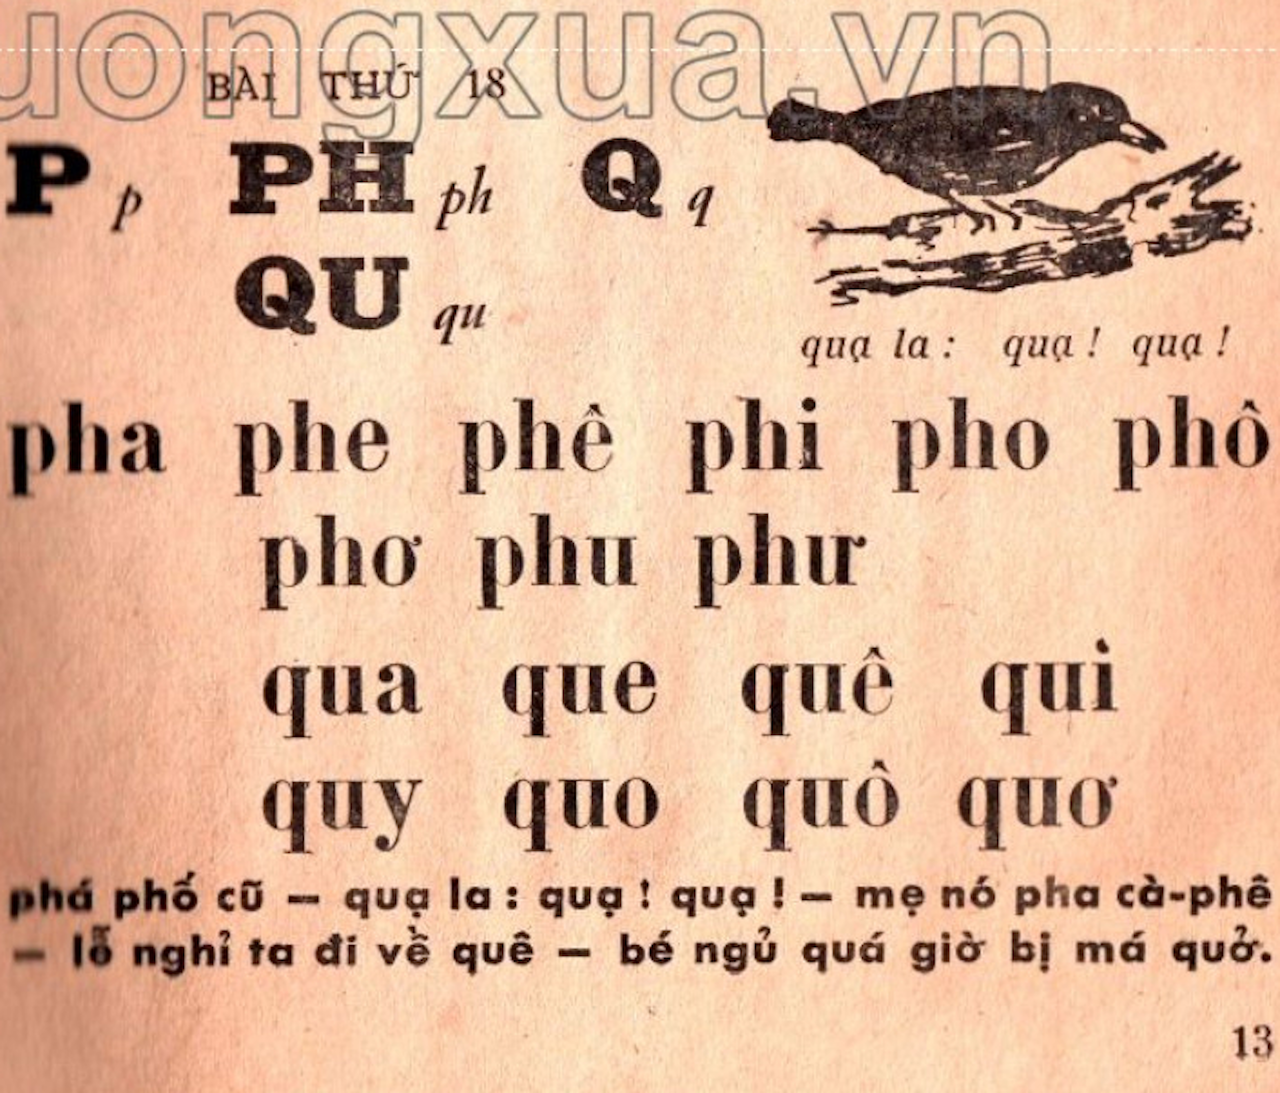 Tiếng Việt 1 không dạy chữ P: 'Cải tiến hoá cải lùi, sai lầm nghiêm trọng' - Ảnh 3.